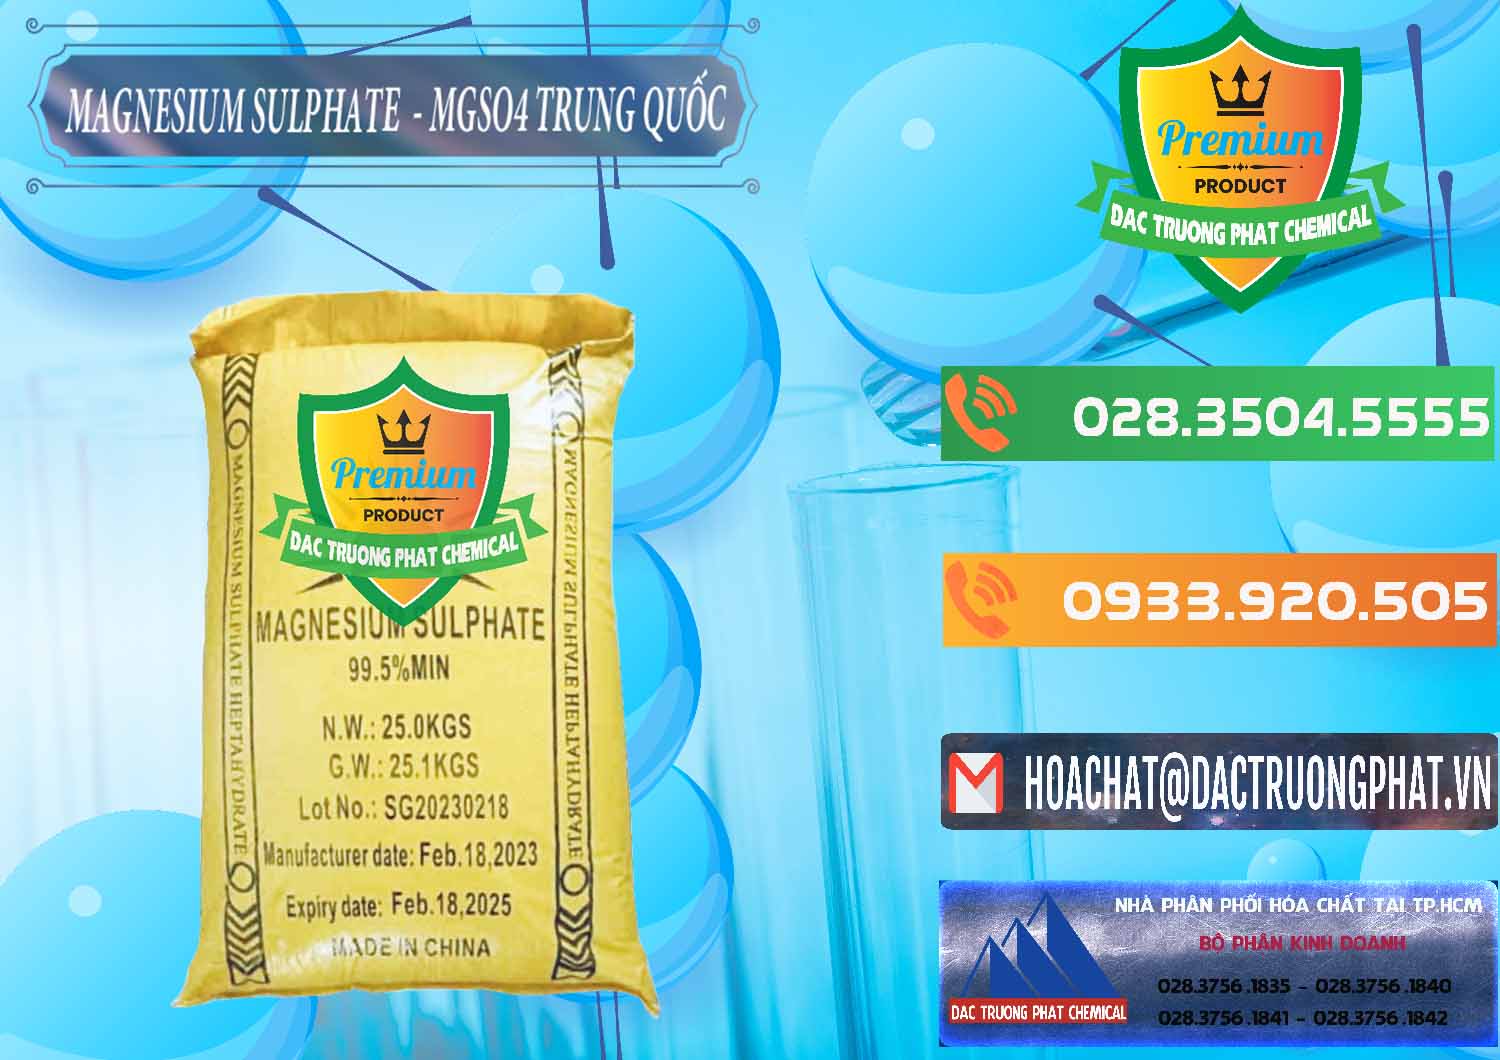 Nơi chuyên cung ứng và bán MGSO4.7H2O – Magnesium Sulphate Heptahydrate Logo Mặt Trời Trung Quốc China - 0391 - Công ty chuyên kinh doanh & cung cấp hóa chất tại TP.HCM - hoachatxulynuoc.com.vn